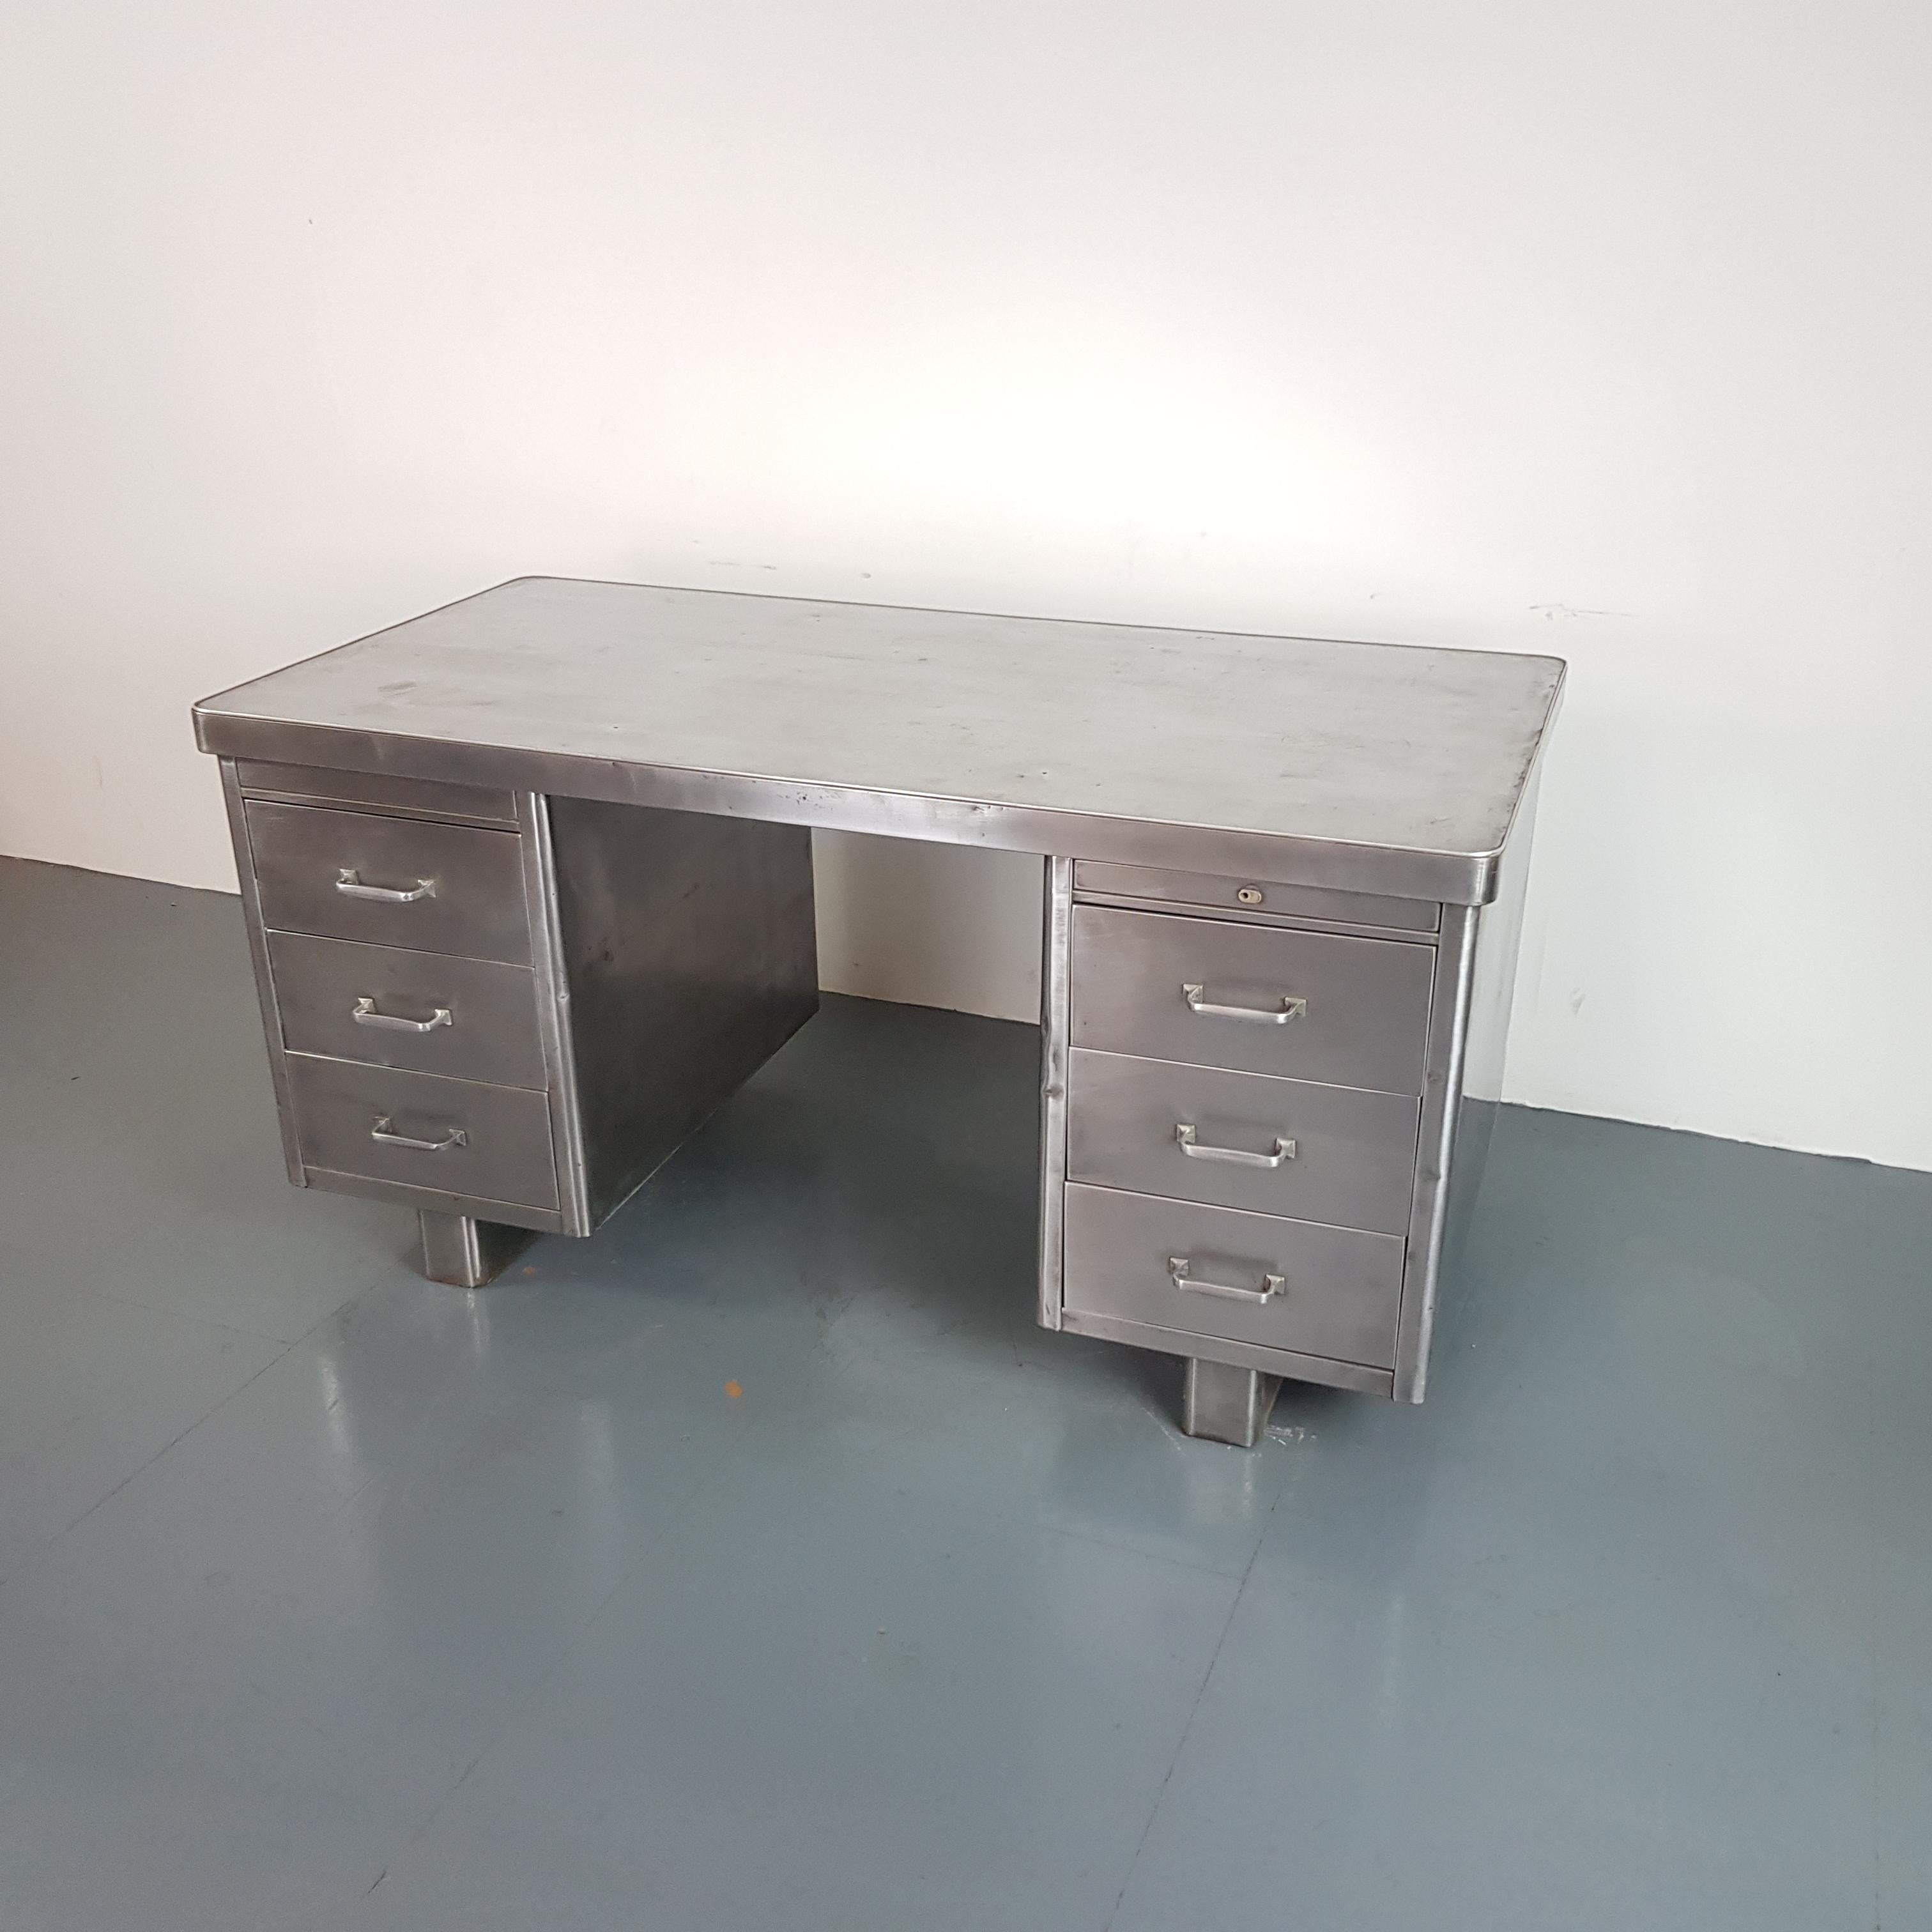 British Vintage Industrial 1930s Double Pedestal Polished Steel Desk For Sale